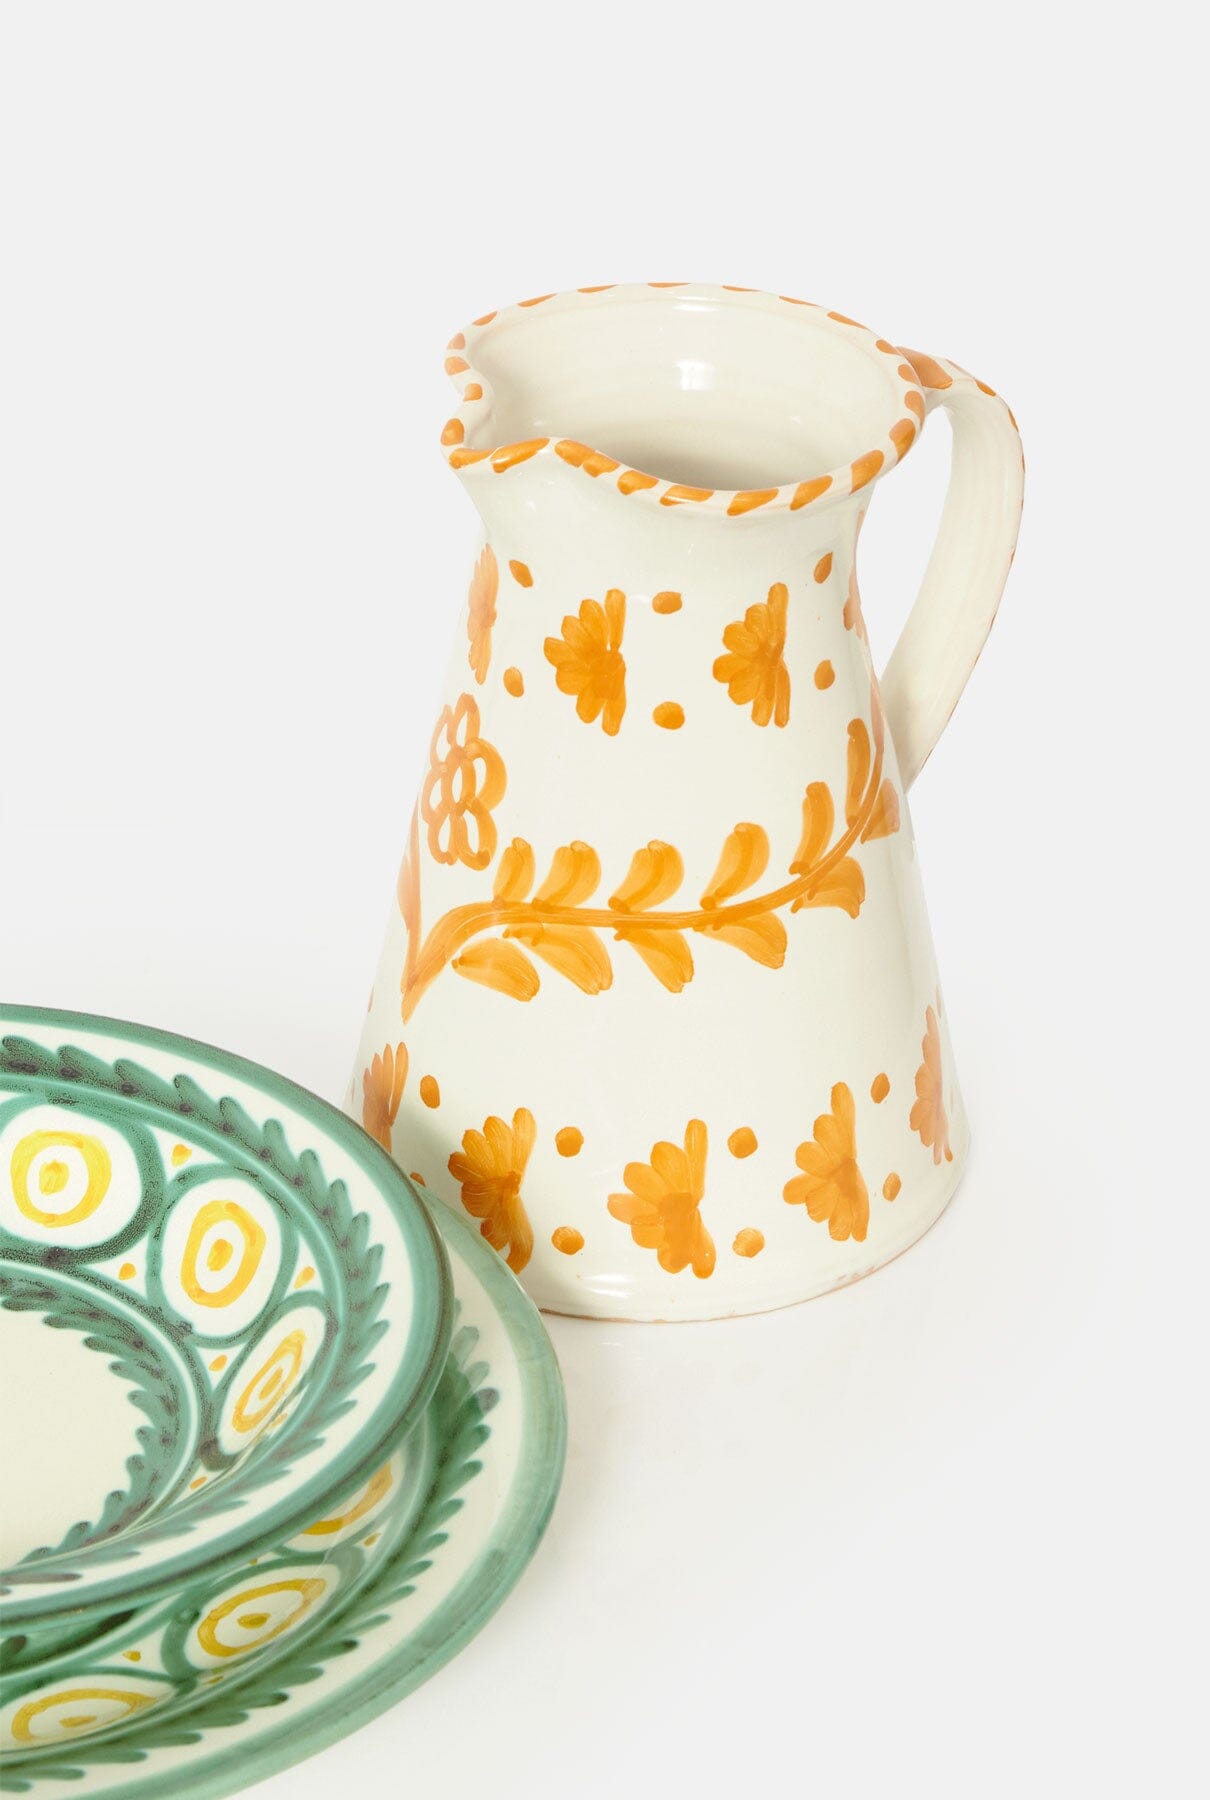 Terracota Jar or flower vase. Floral print Tableware Casa Tica 